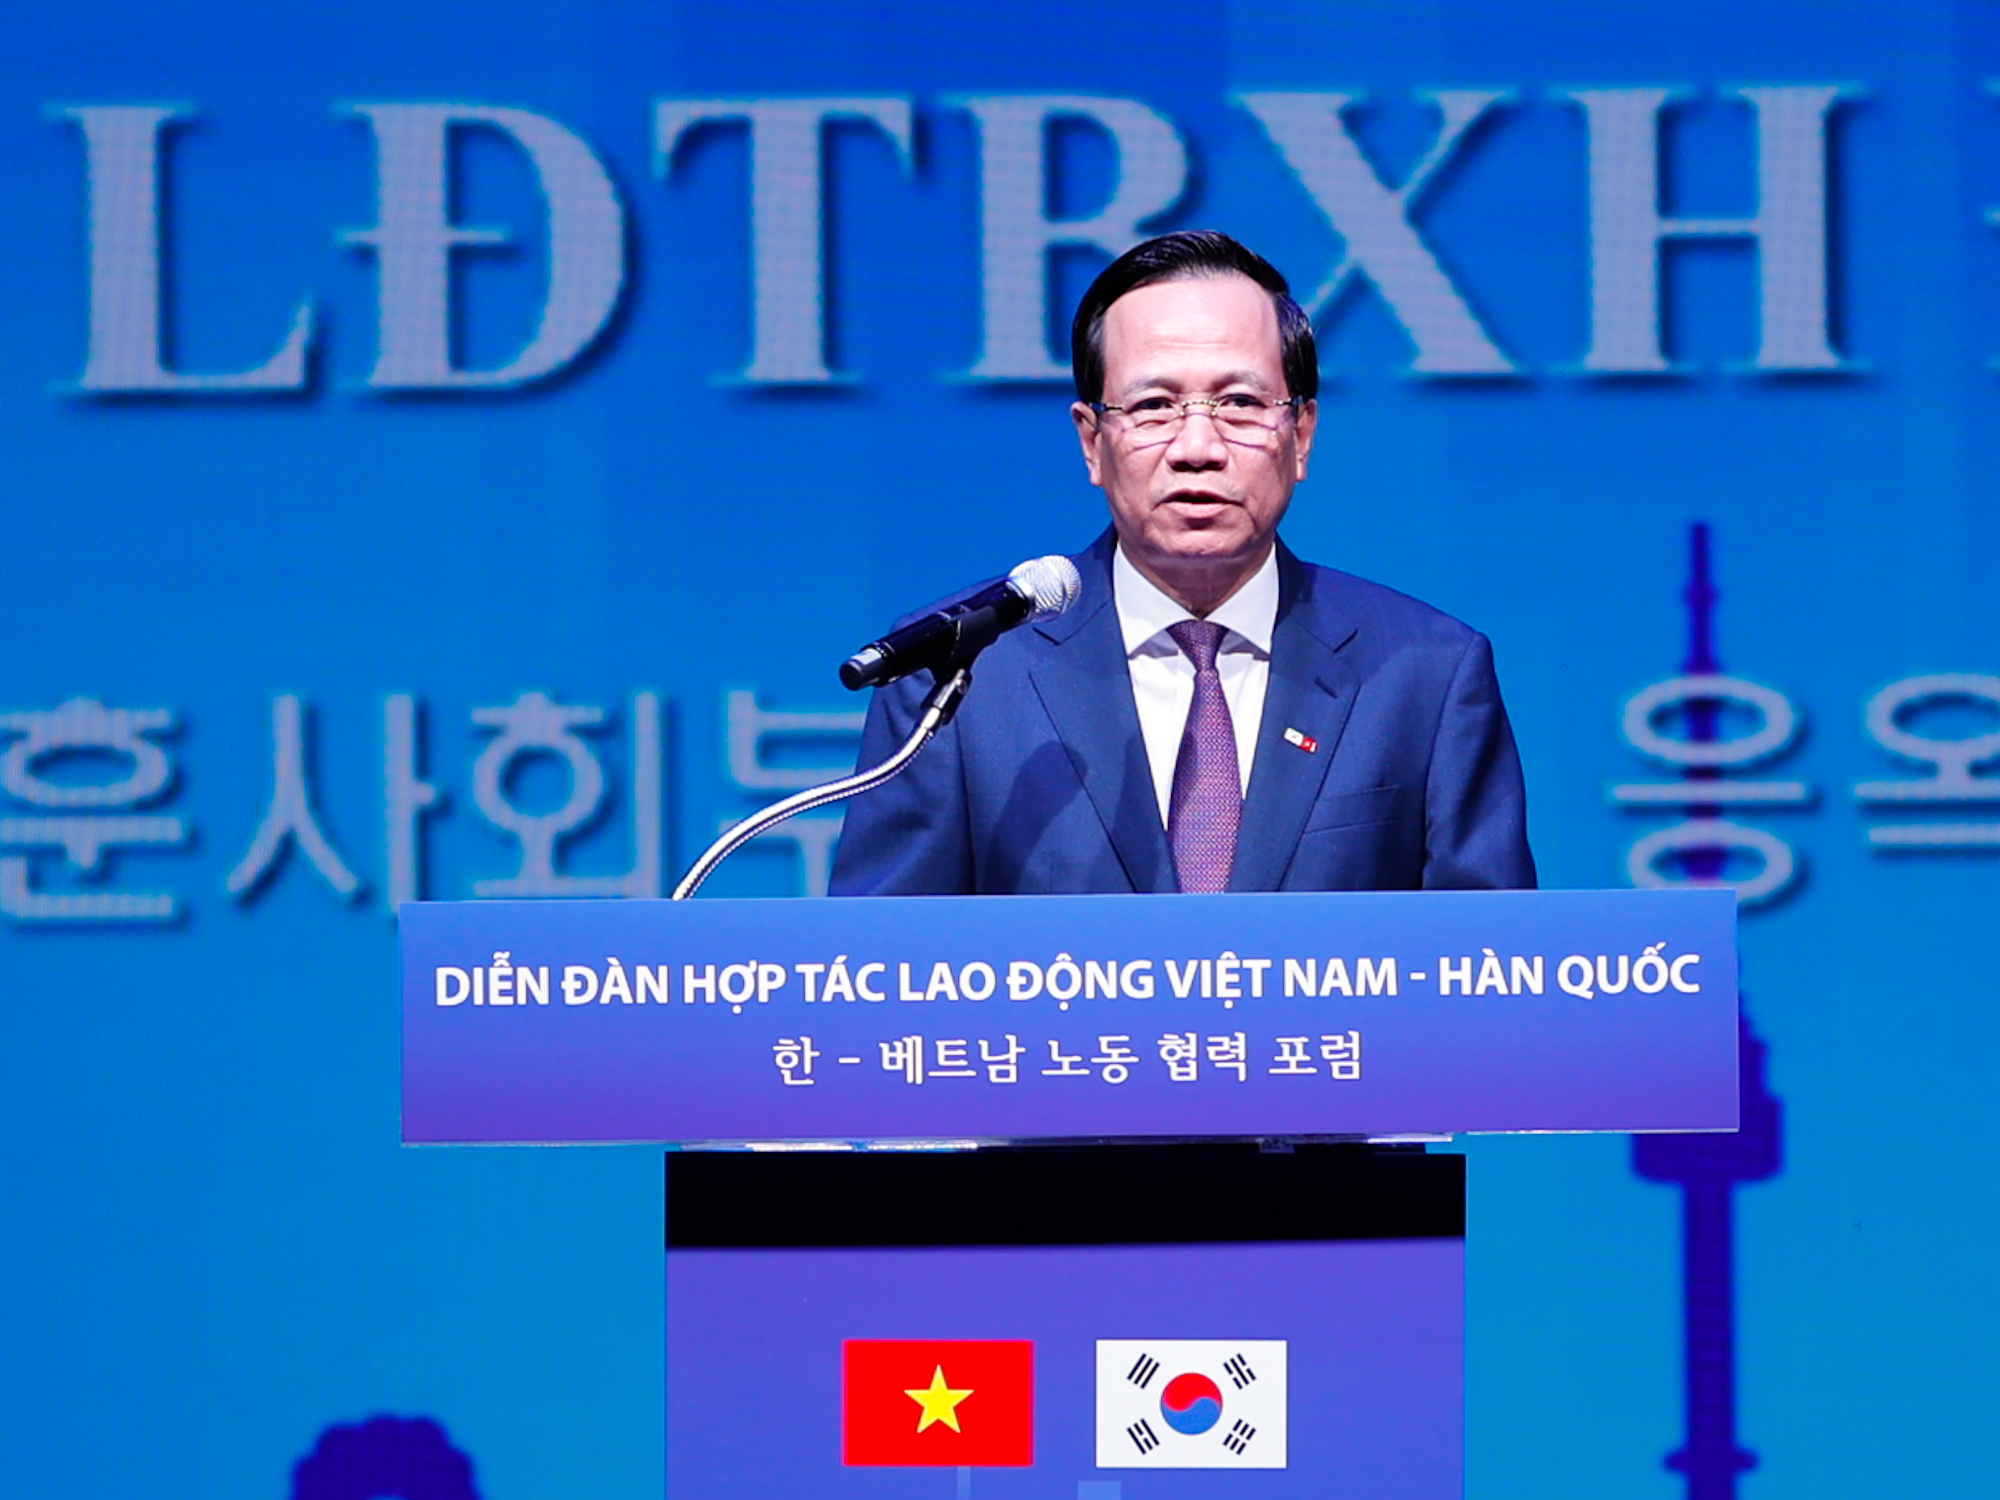 Tạo thuận lợi nhất cho người lao động, nâng tầm hợp tác lao động Việt Nam-Hàn Quốc - ảnh 2